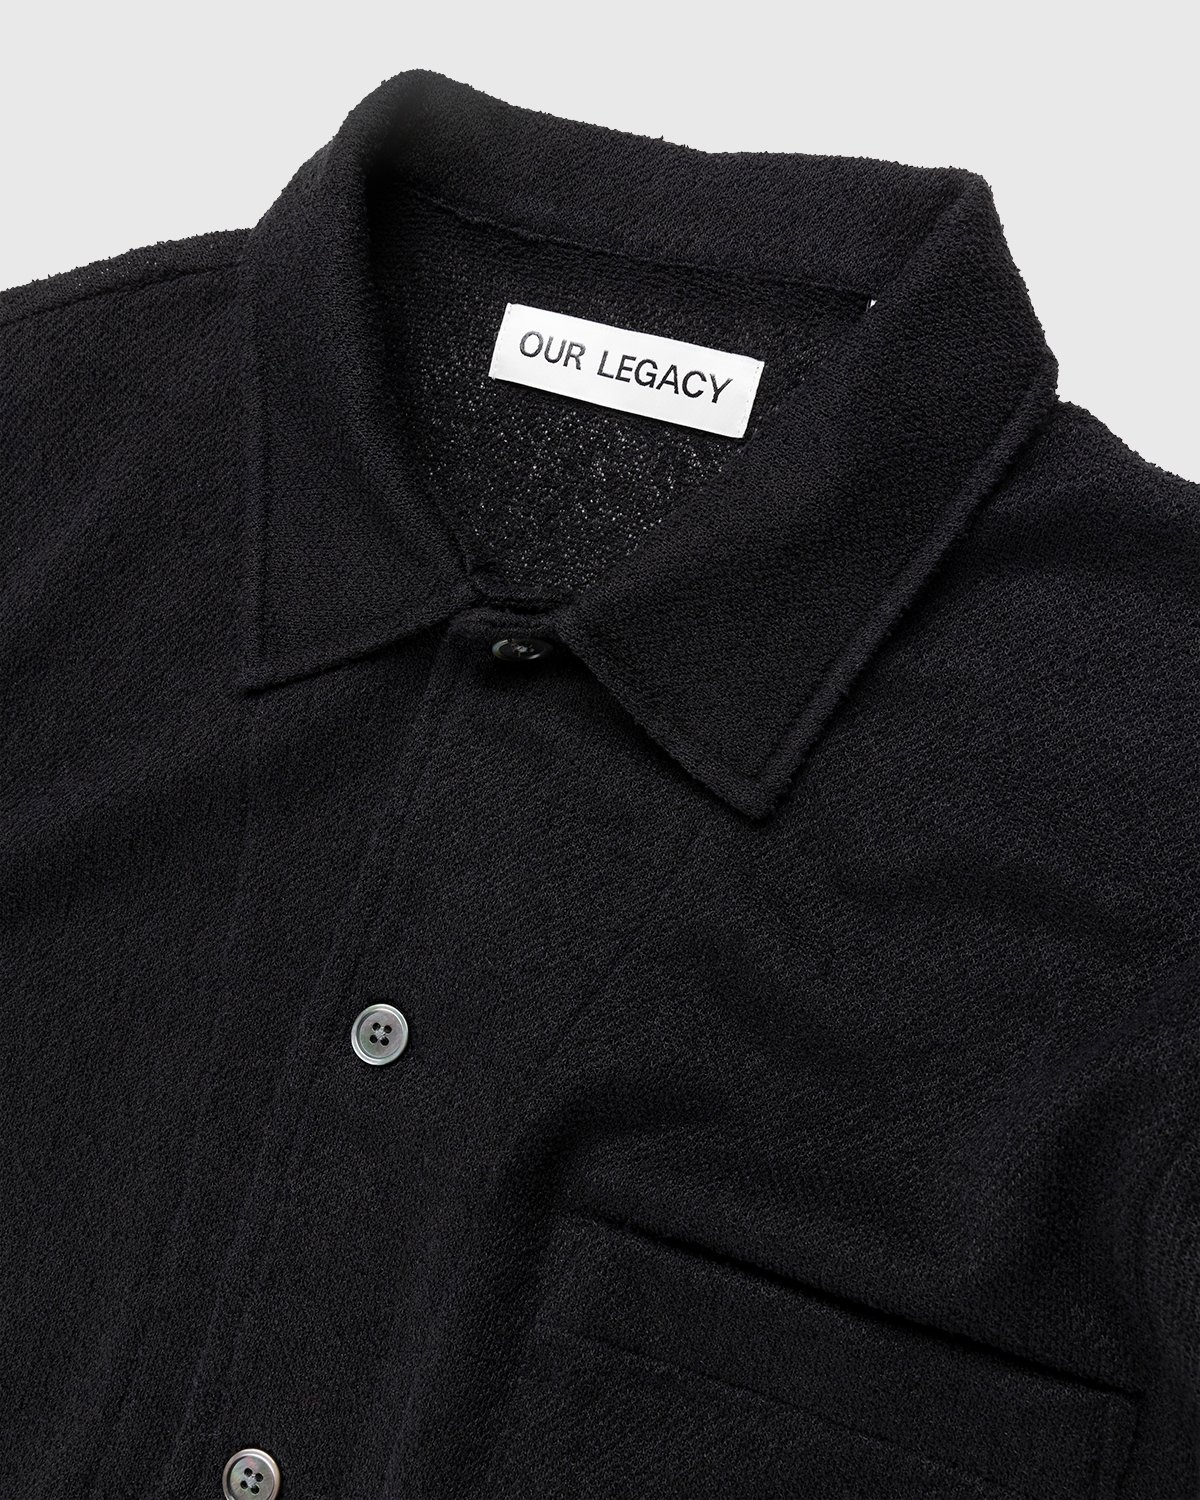 Our Legacy – Box Short Sleeve Shirt Black Boucle - Shirts - Black - Image 3